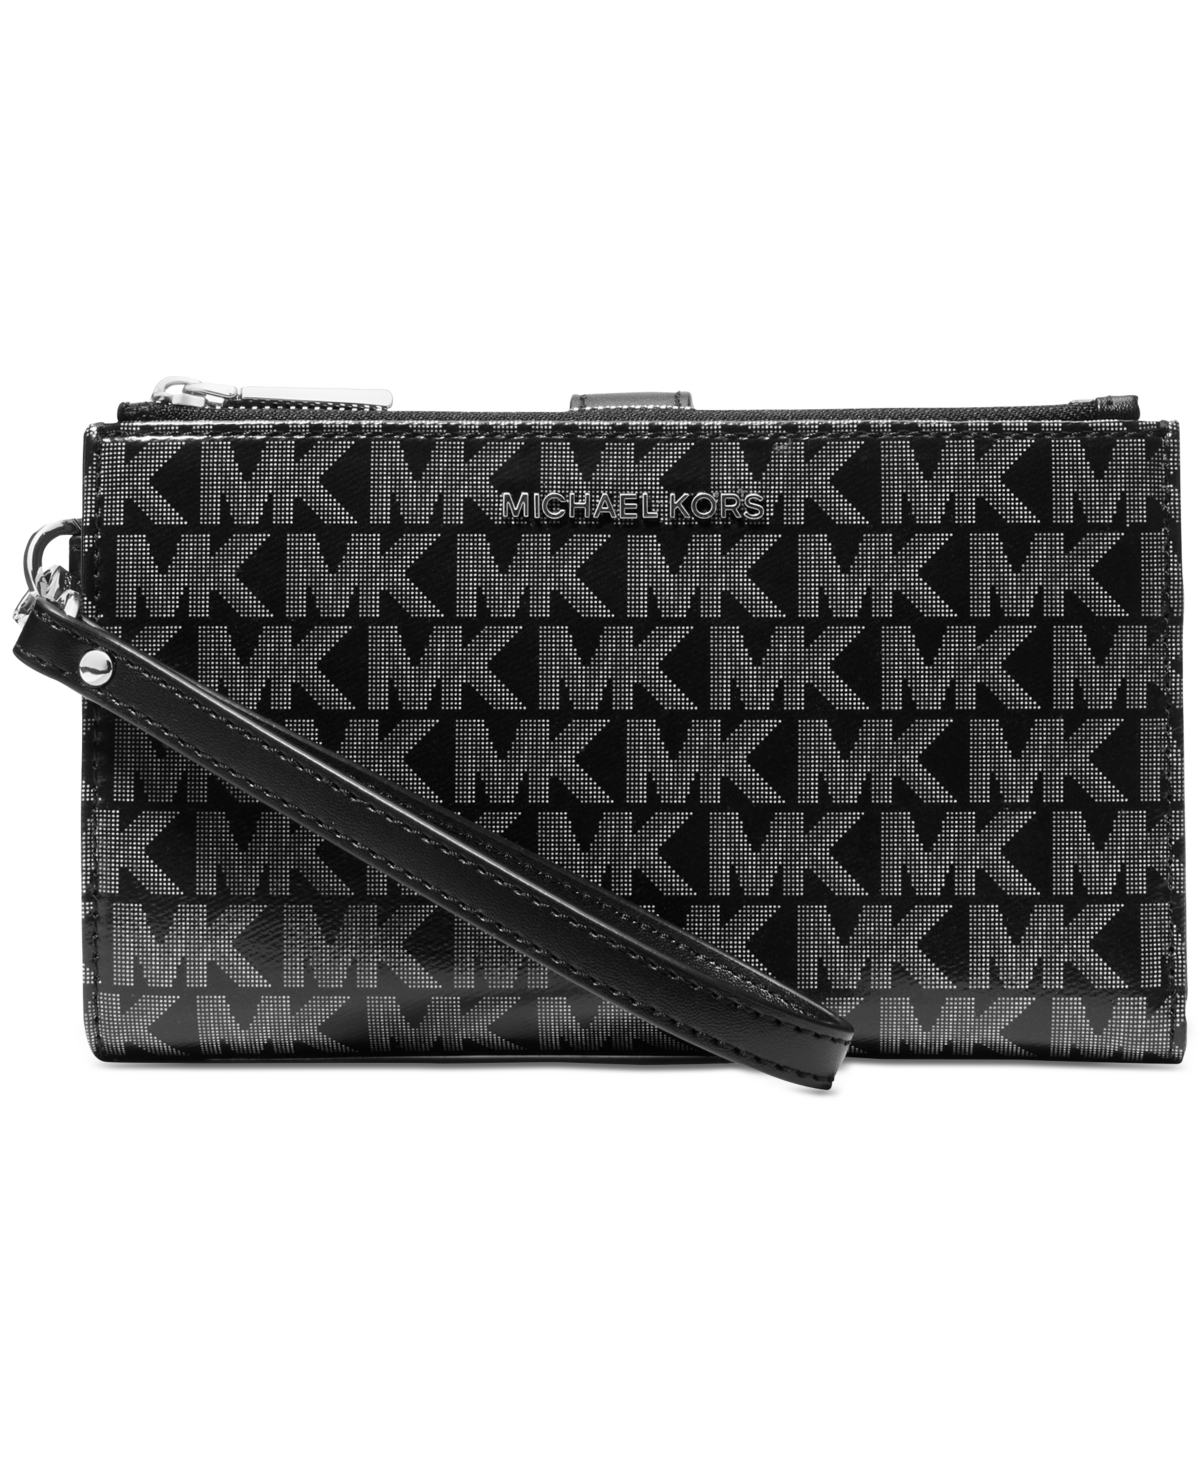 Michael Kors Bags | Michael Kors Double Zip Wallet Wristlet | Color: Black/Gold | Size: Os | Rluckychance88's Closet